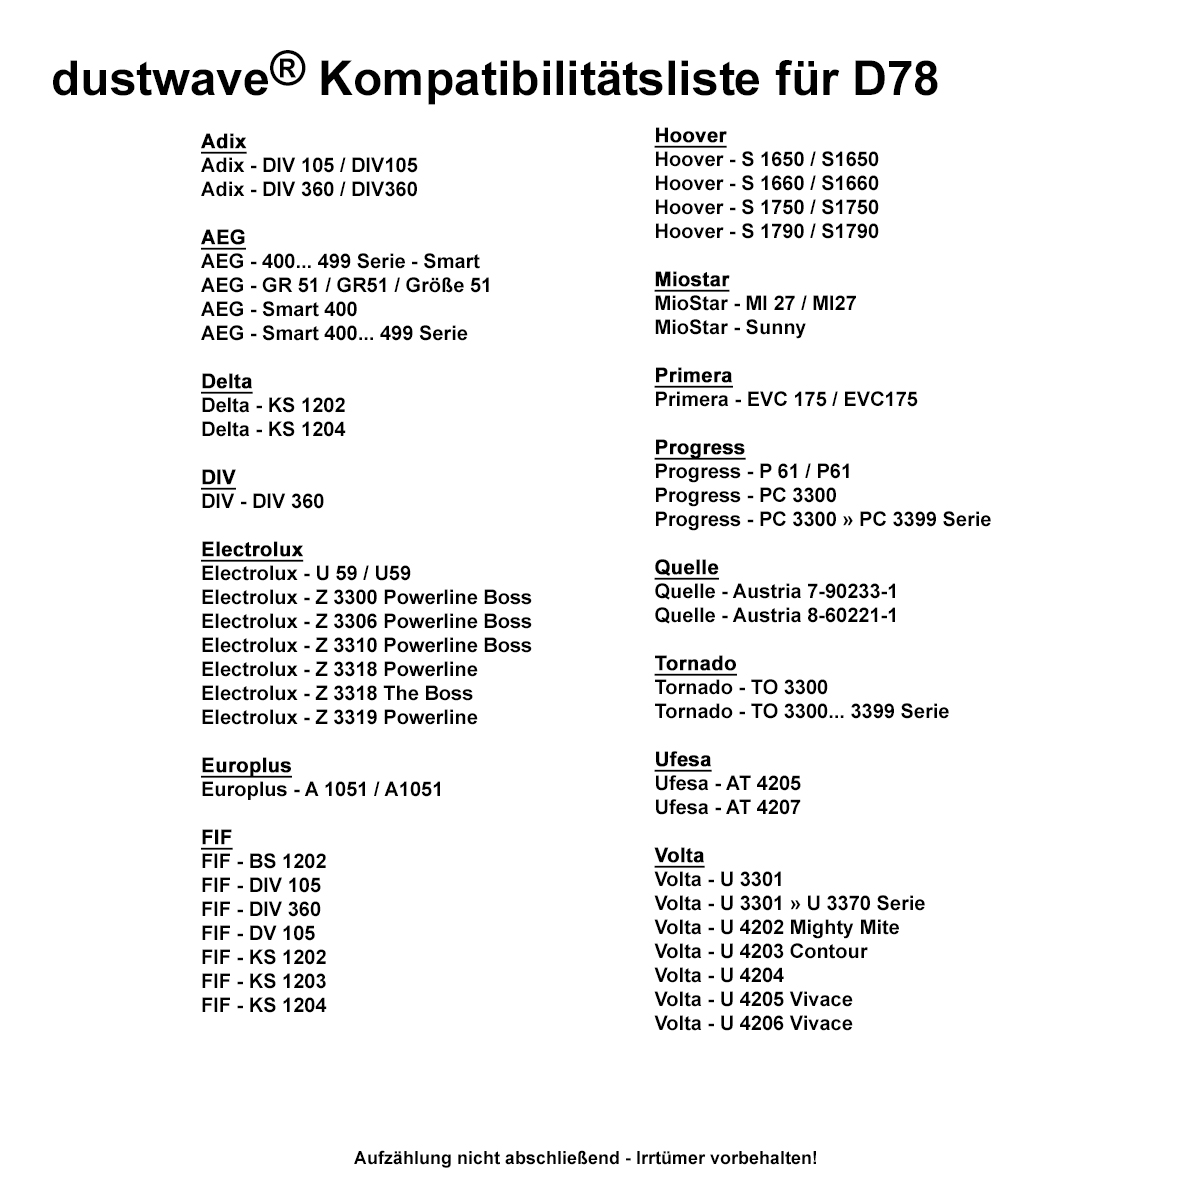 Dustwave® 20 Staubsaugerbeutel für Delta KS 1202 - hocheffizient, mehrlagiges Mikrovlies mit Hygieneverschluss - Made in Germany